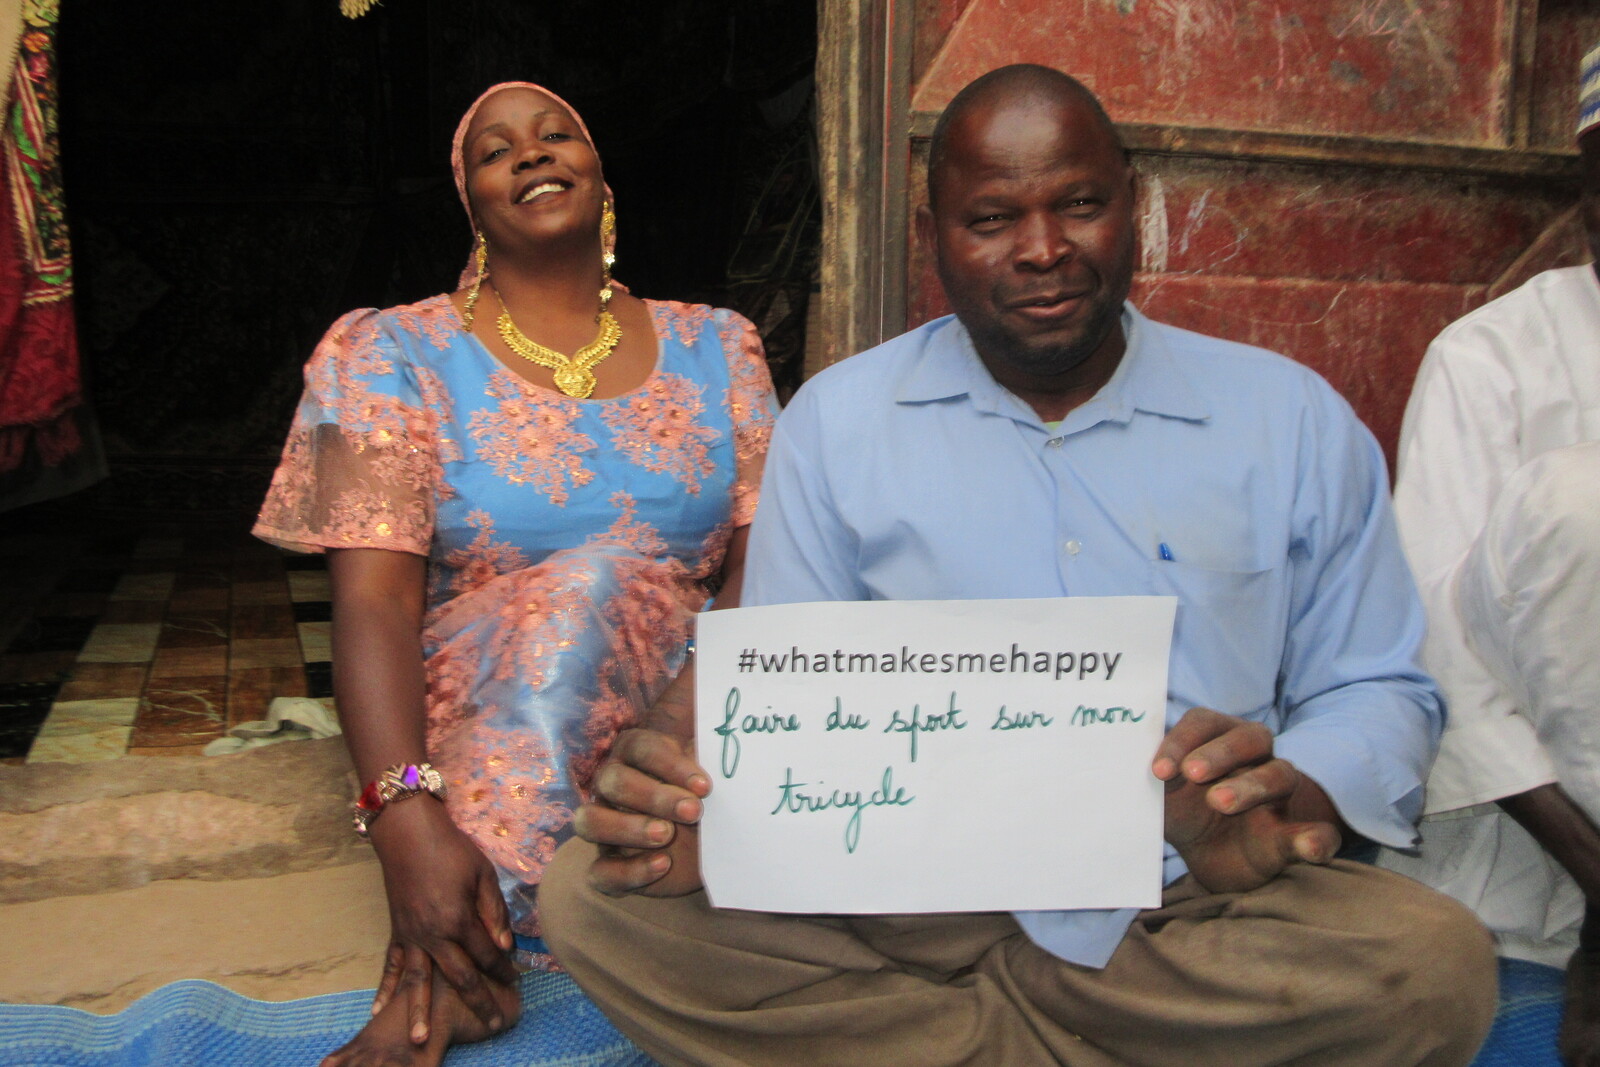 Mann und Frau sitzen auf dem Boden und halten ein Schild hoch mit der Aufschrift "#whatmakesmehappy"